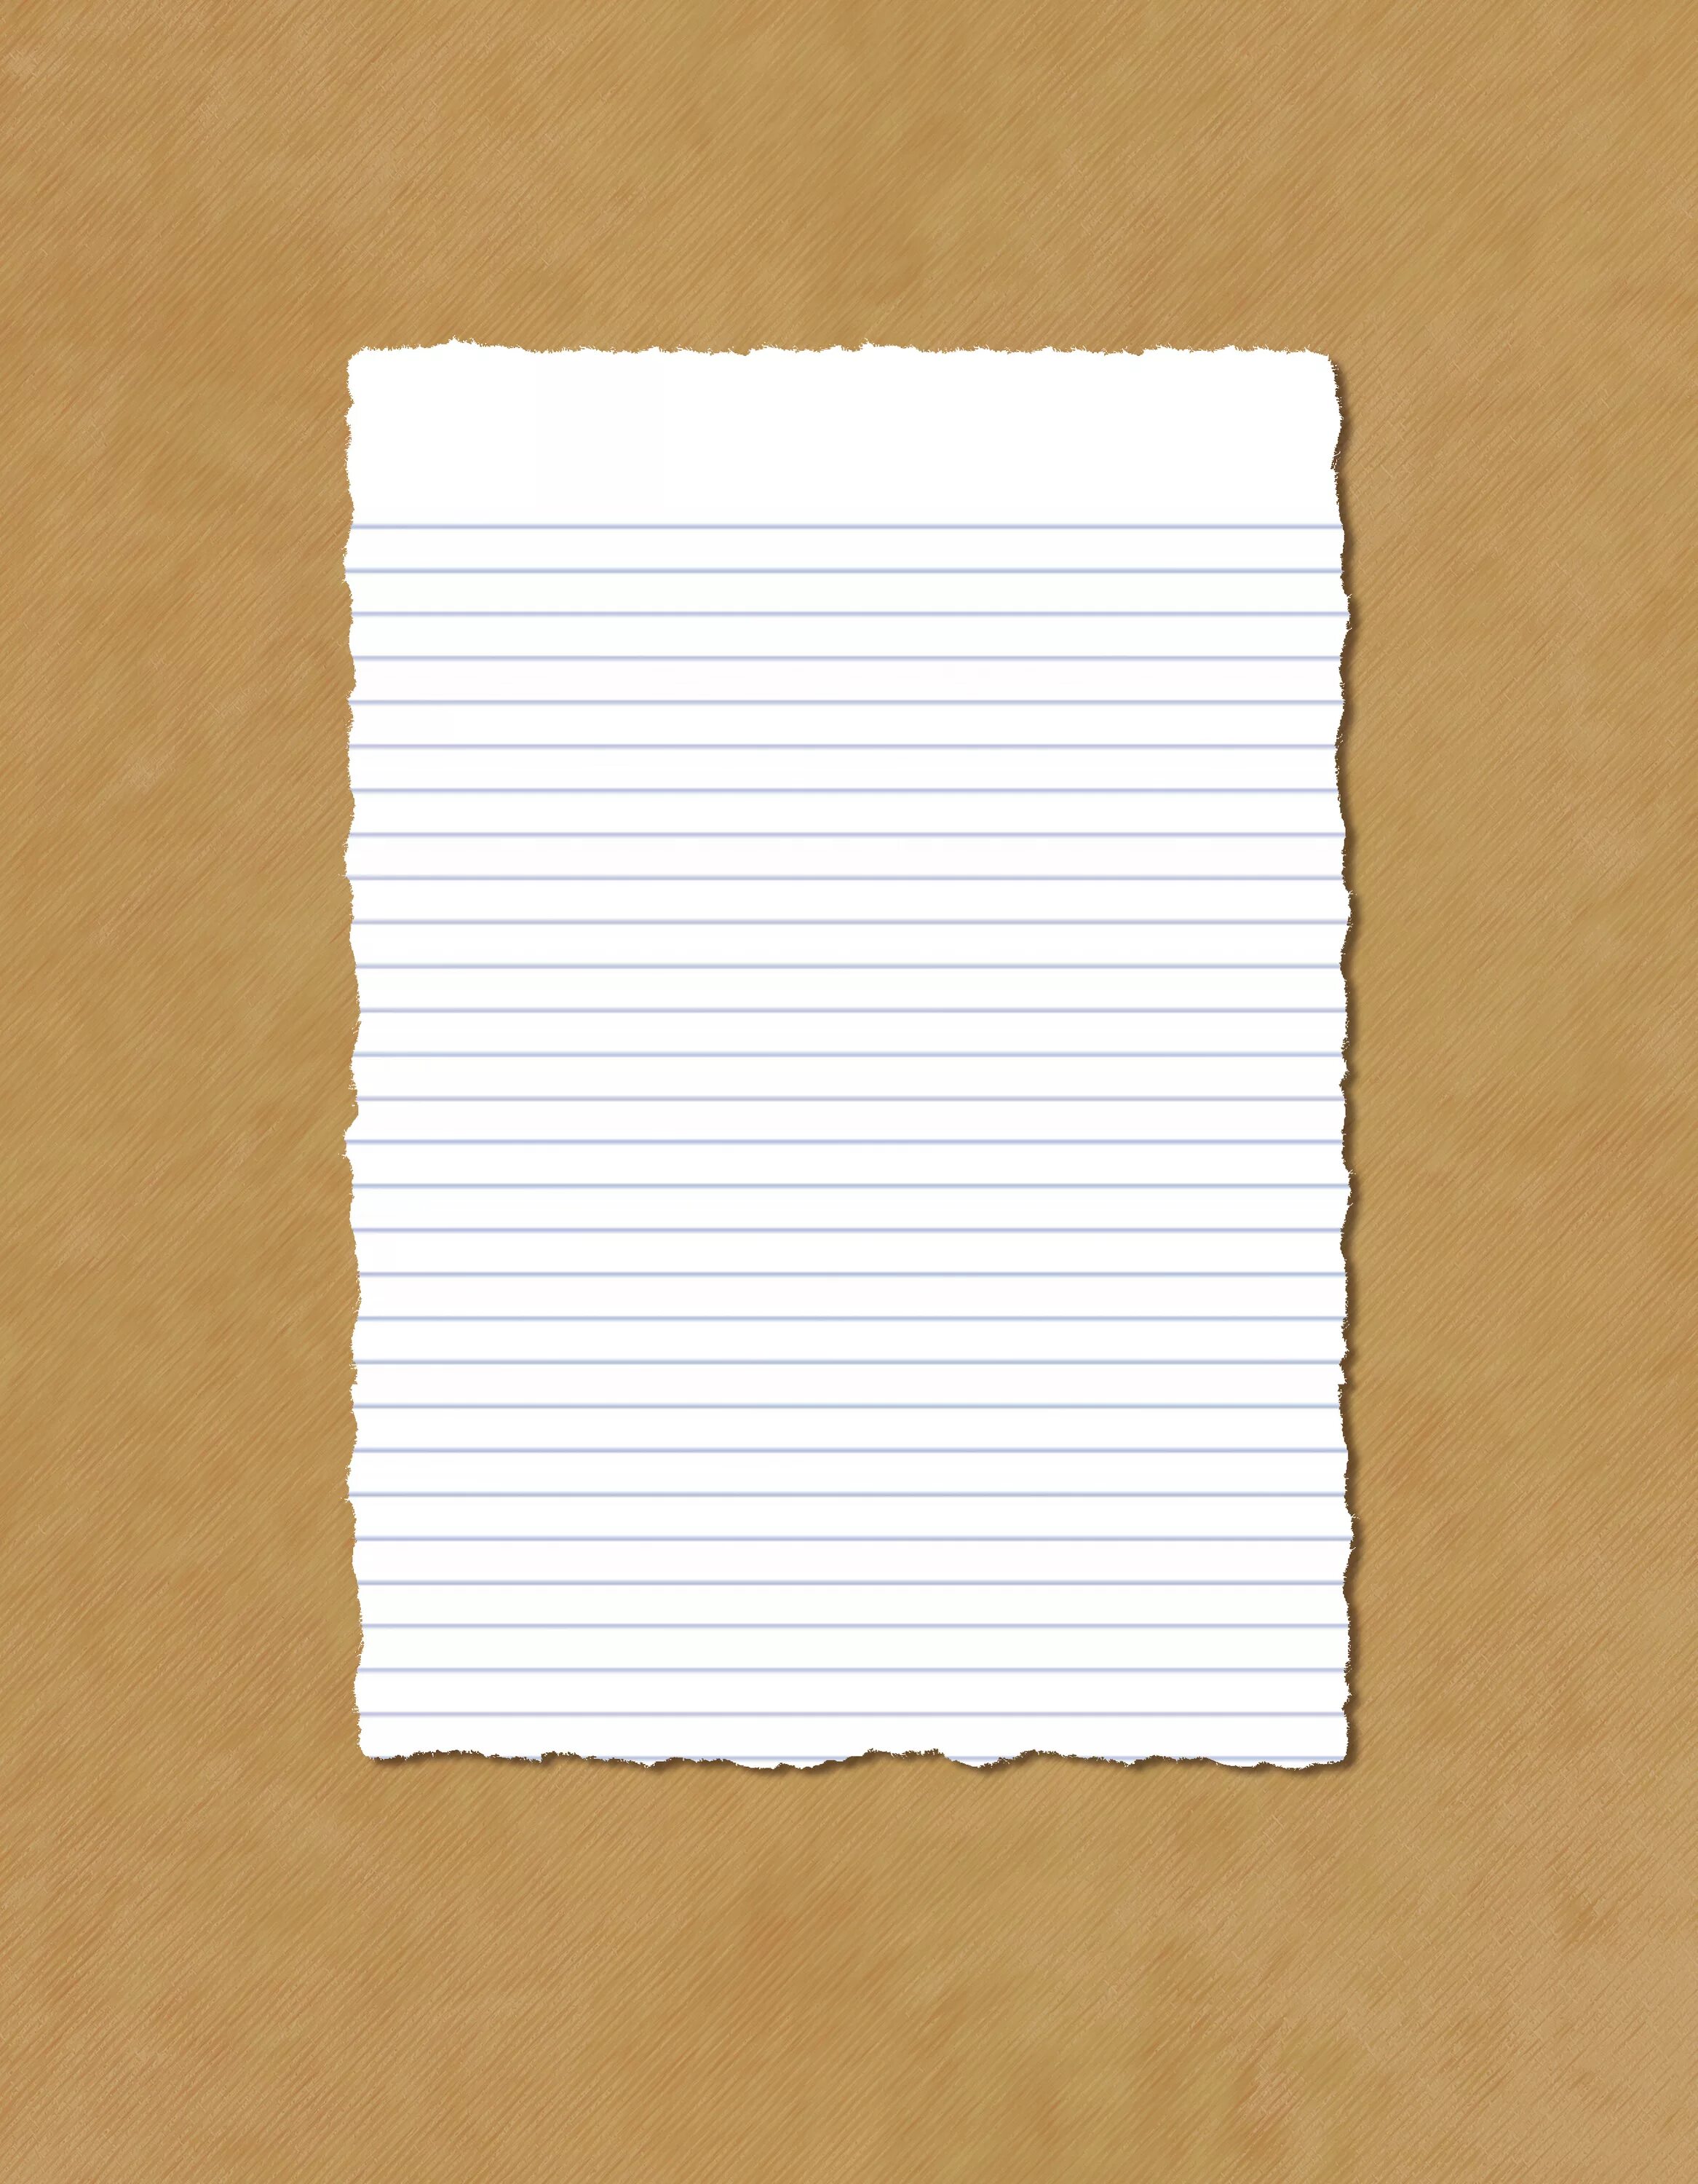 Ответы листы бумаги 2 по 5. Лист бумаги. Листочек бумаги. Пустой лист бумаги. Чистый листок бумаги.